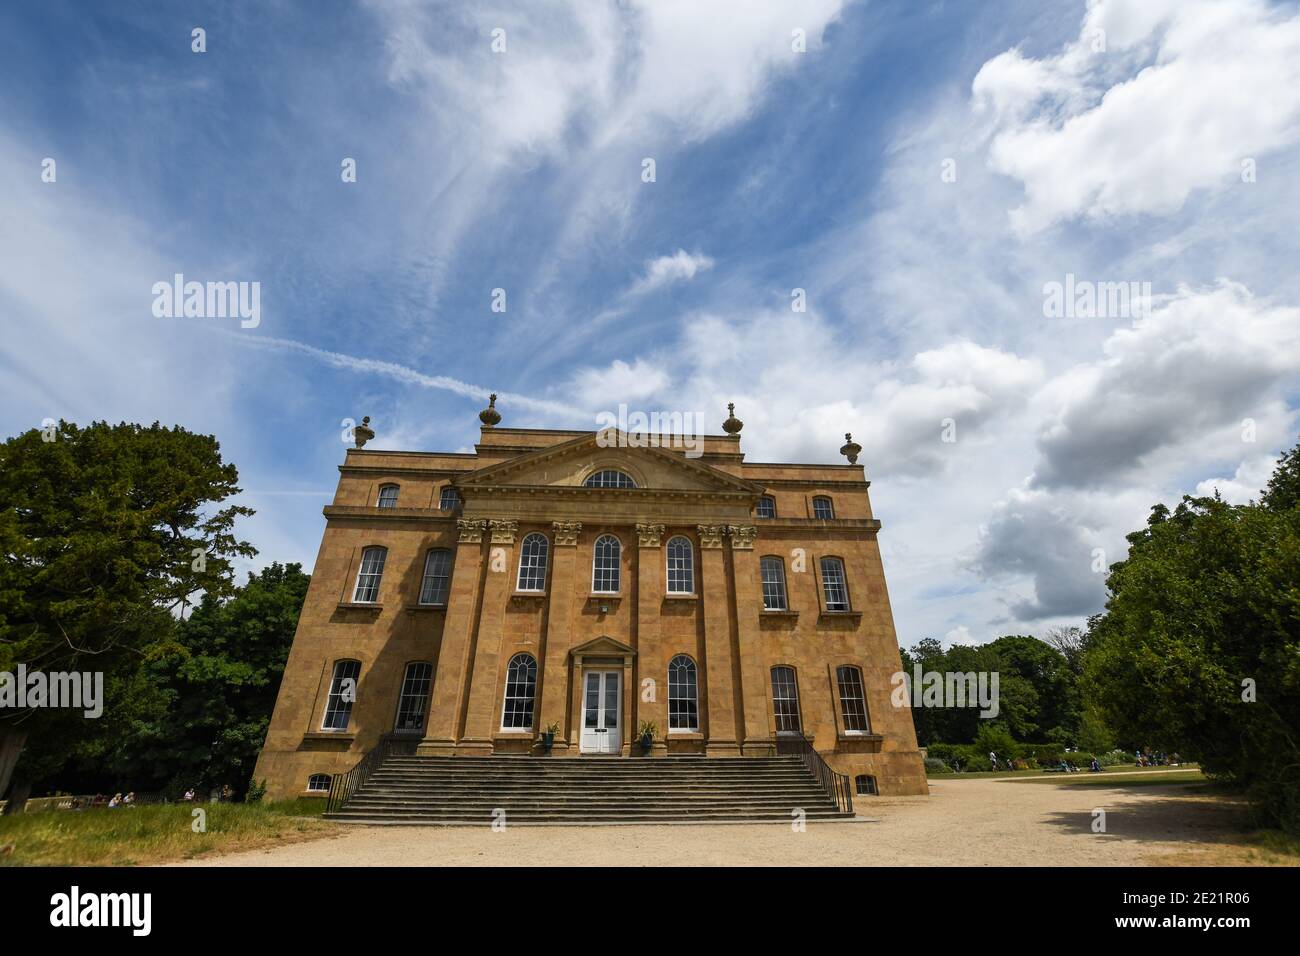 Bild von Kings Weston House, einem historischen Gebäude in Kings Weston Lane, Kingsweston, Bristol, England, mit schönen Himmel im Hintergrund und Kopie sp Stockfoto